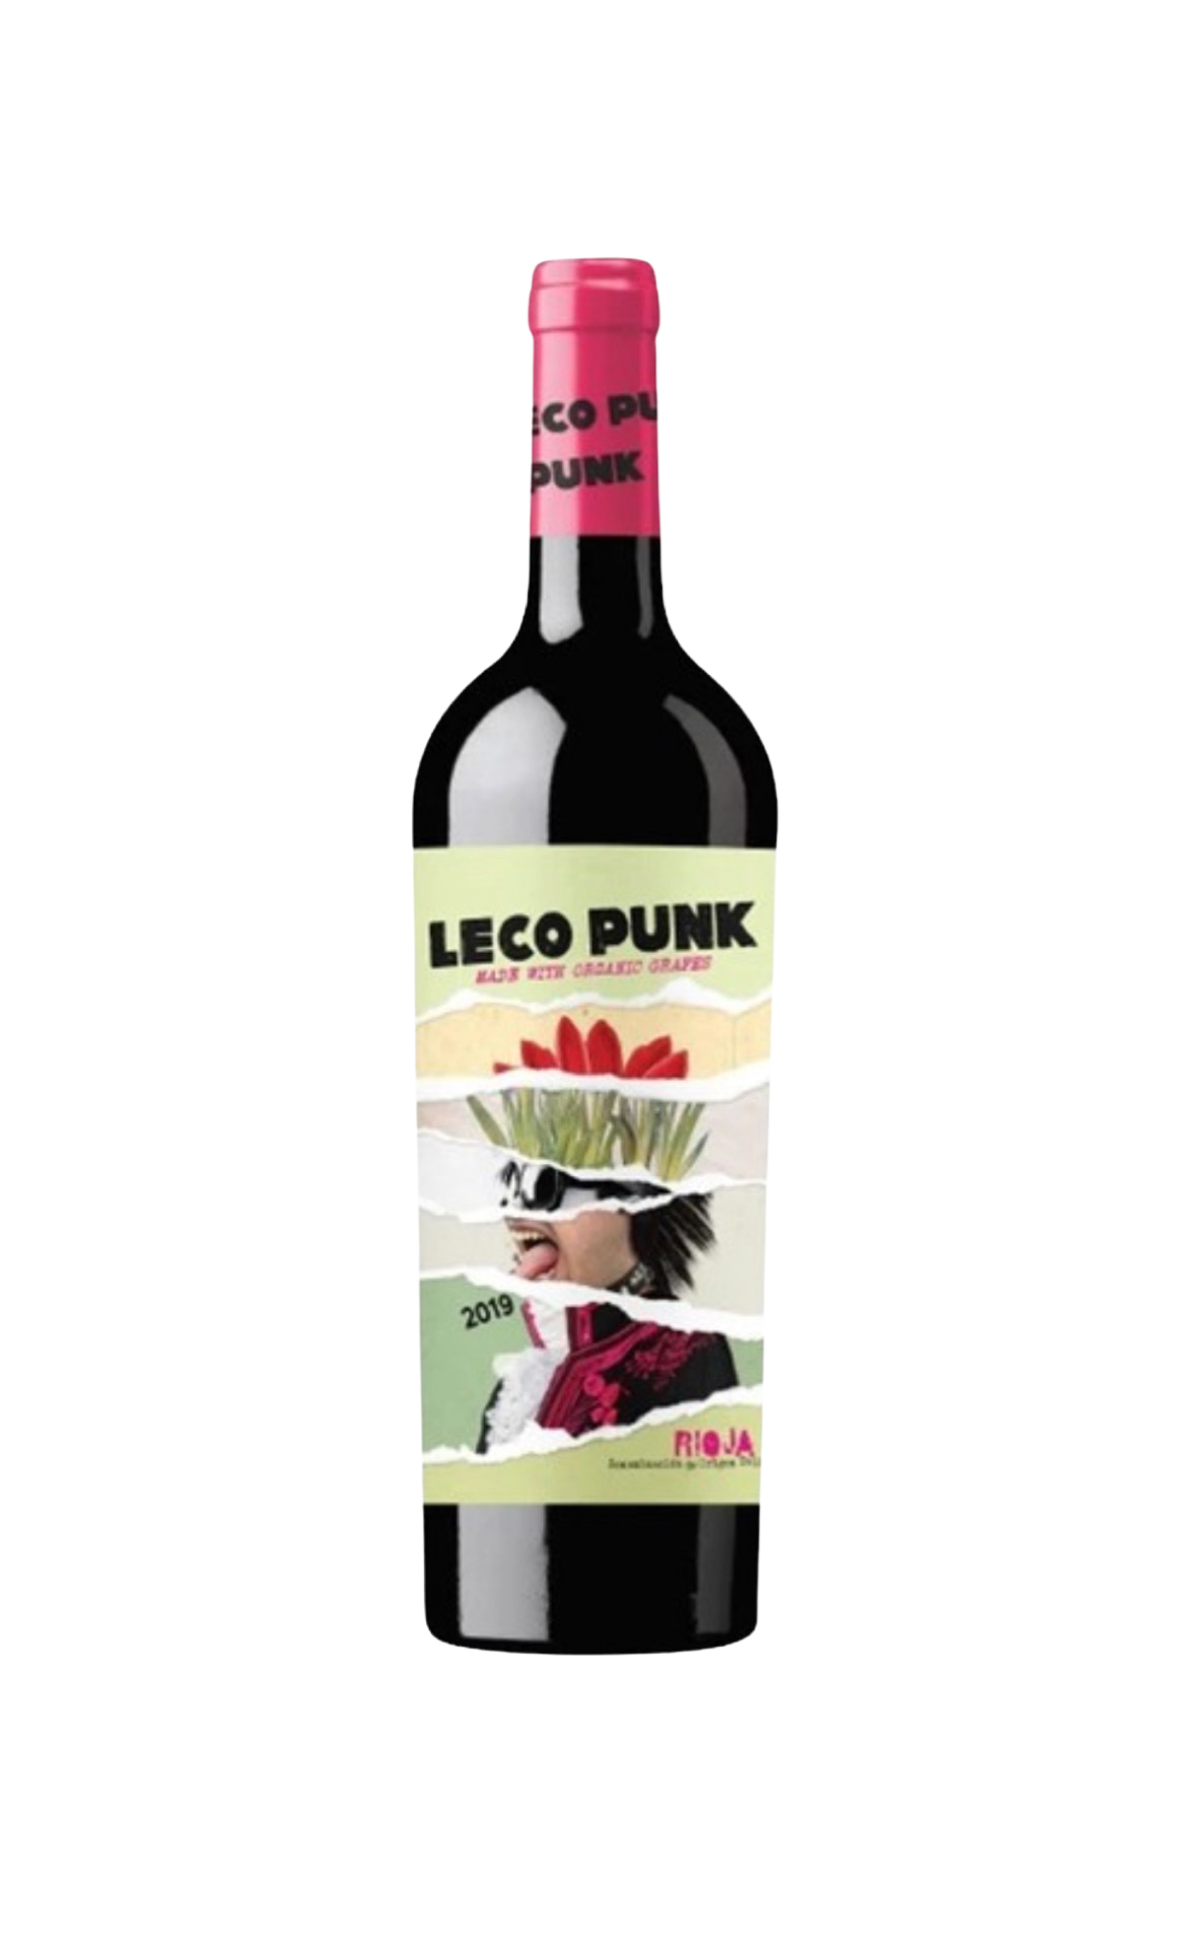 Leco Punk Tempranillo (Rioja) Organic 2020